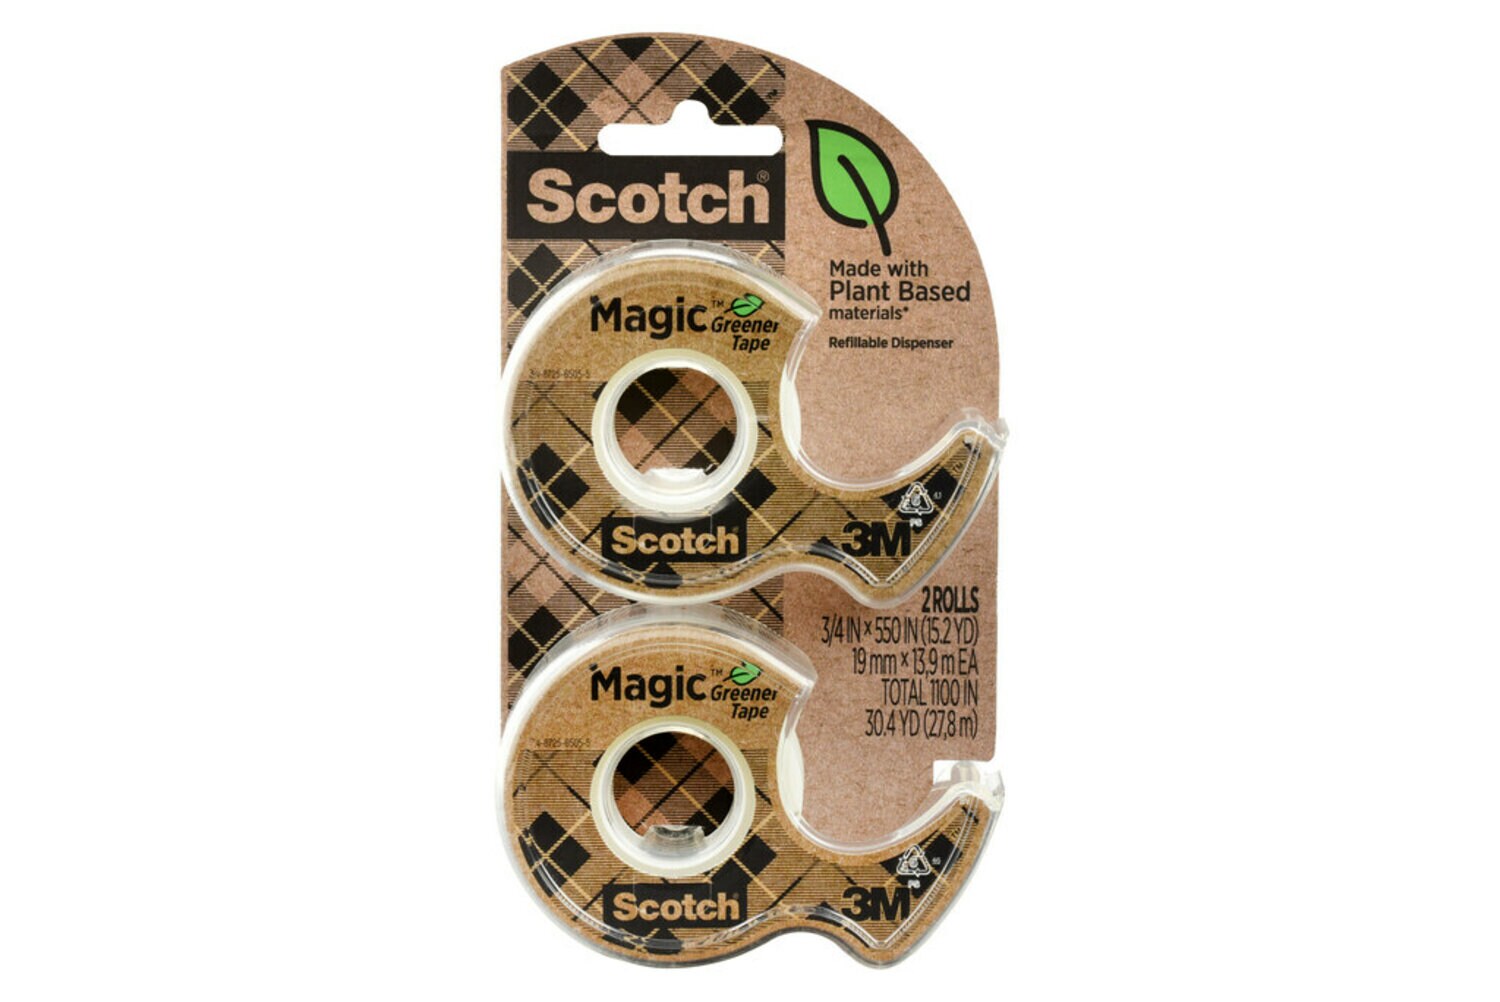 7100282780 - Scotch Magic Greener Tape 123DM-2-EF, 0.75 in x 550 in (19 mm x 13.9 m)